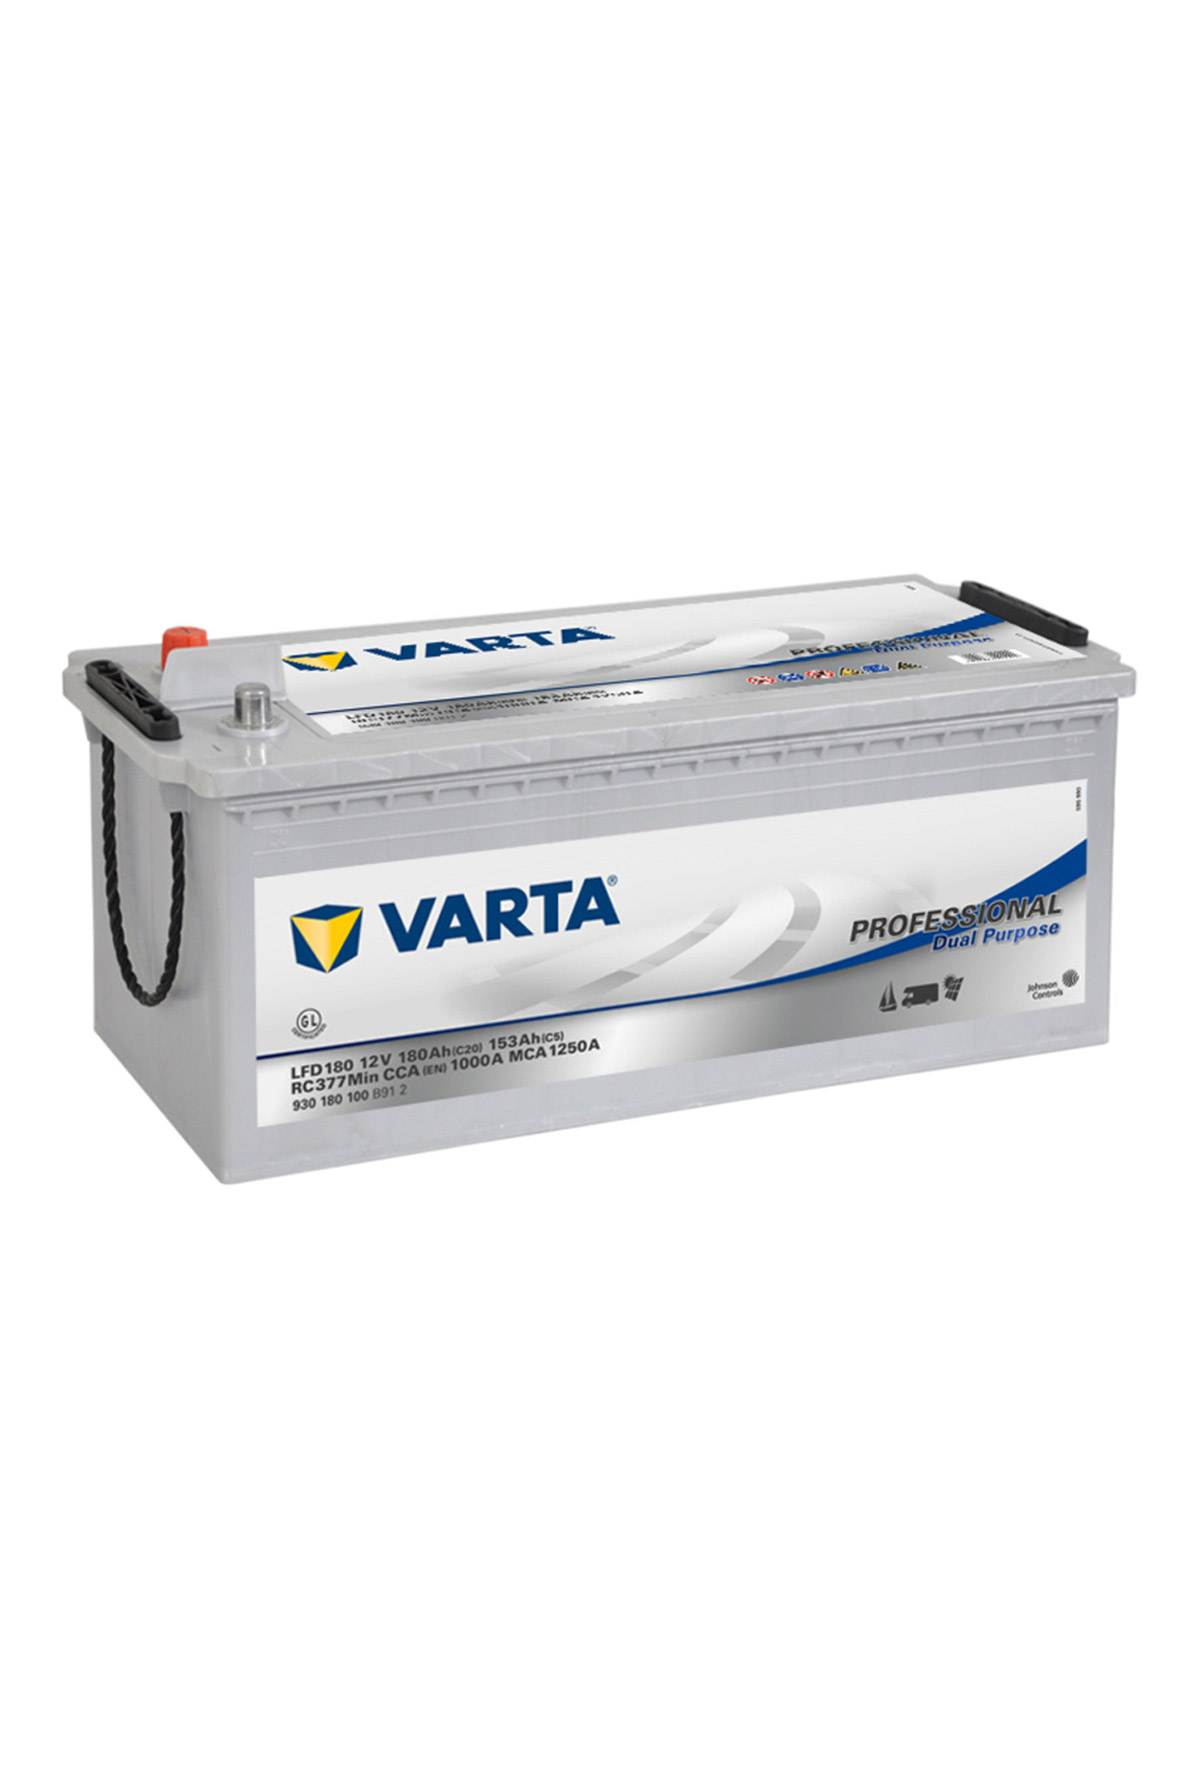 Varta LFD180 12V 180Ah Professional MF accu